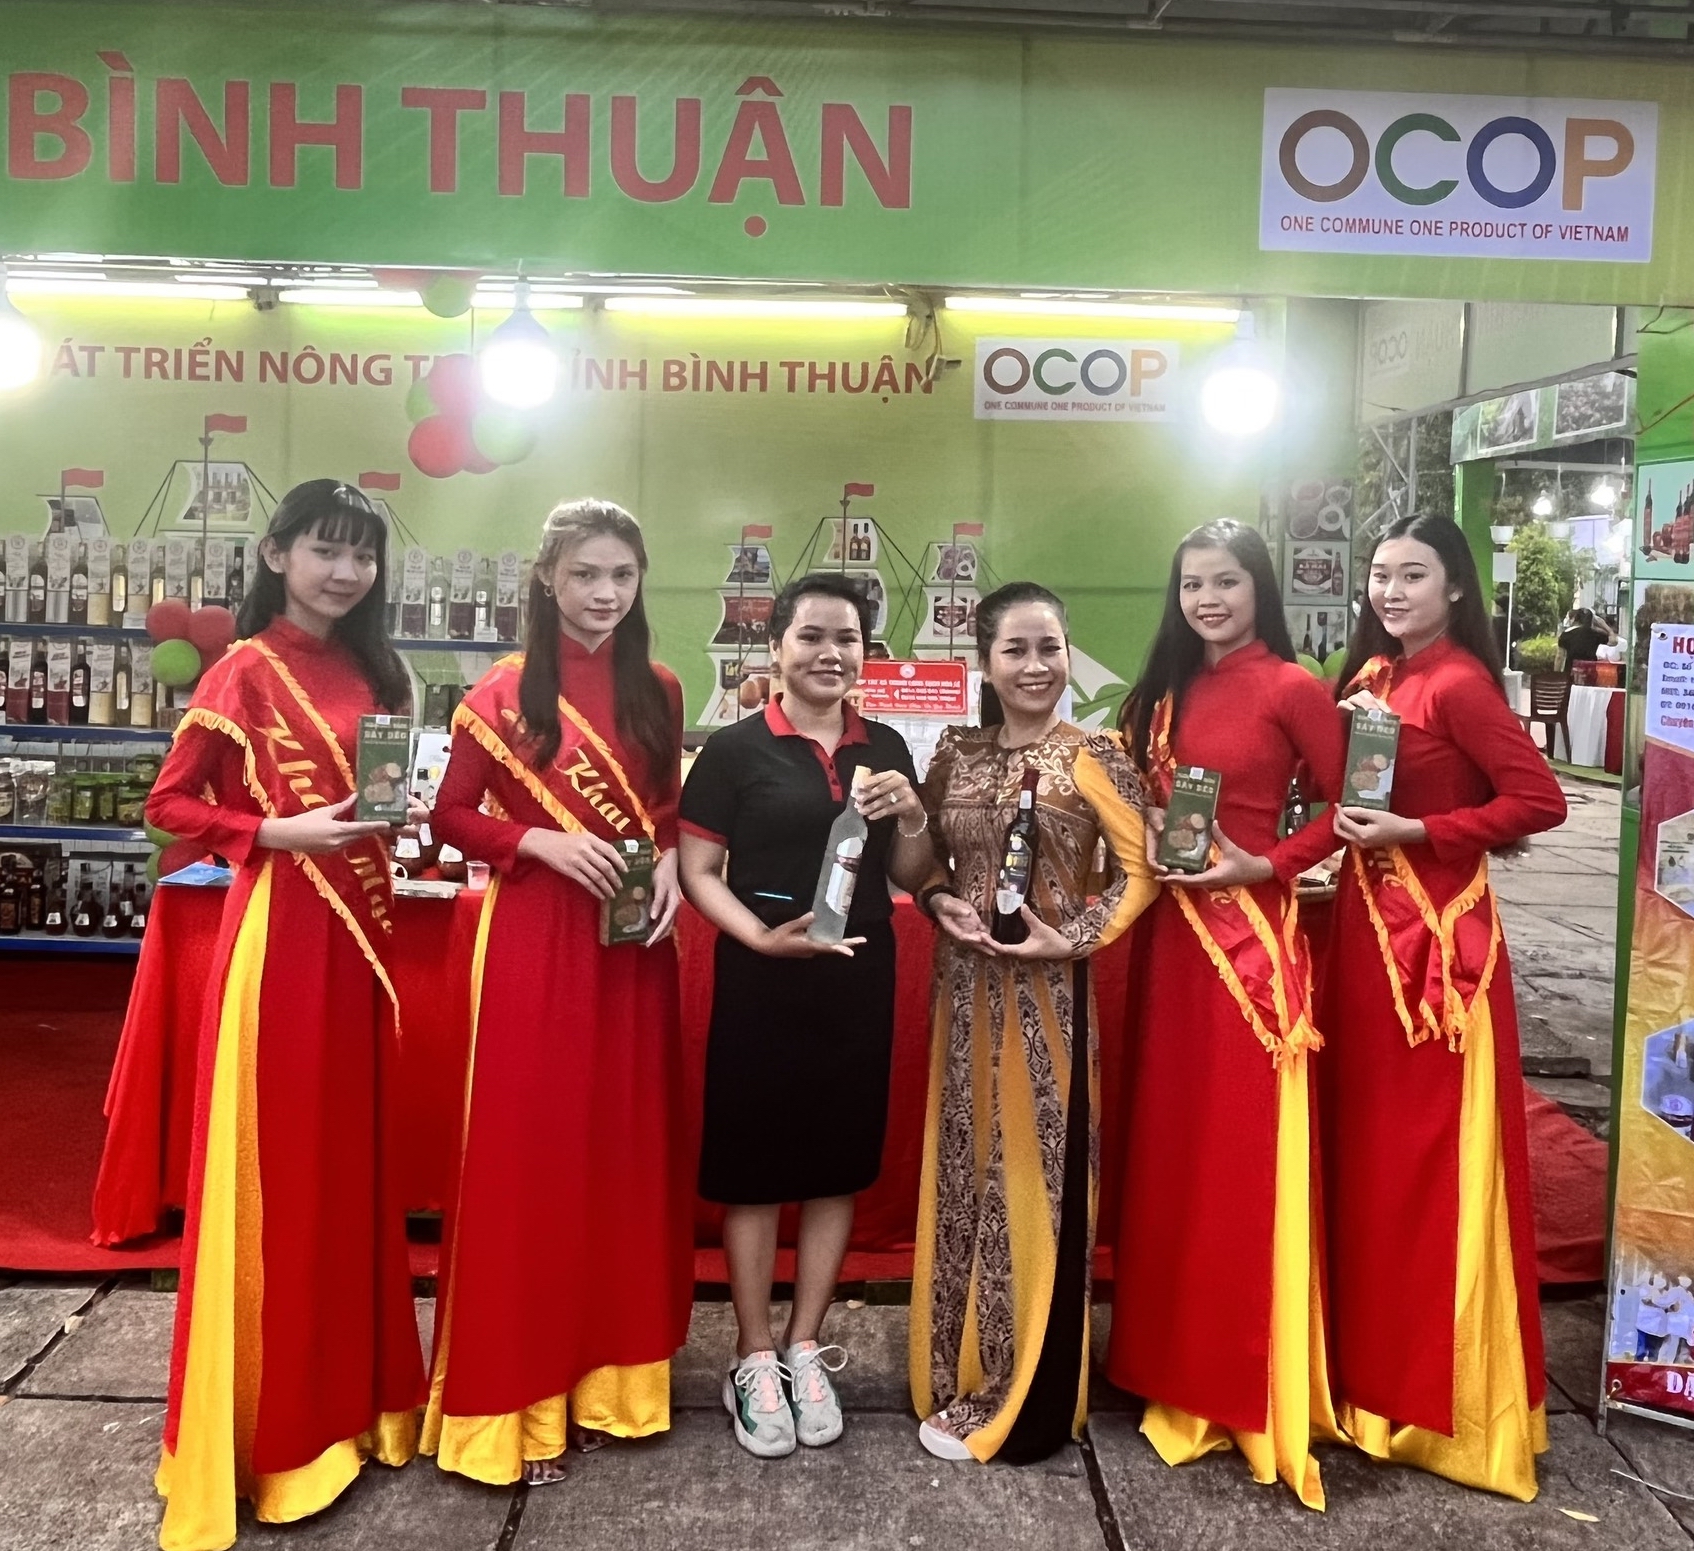 Bình Thuận: Nhiều sản phẩm OCOP công nghiệp nông thôn đã khẳng định thương hiệu, uy tín trên thị trường - Ảnh 2.